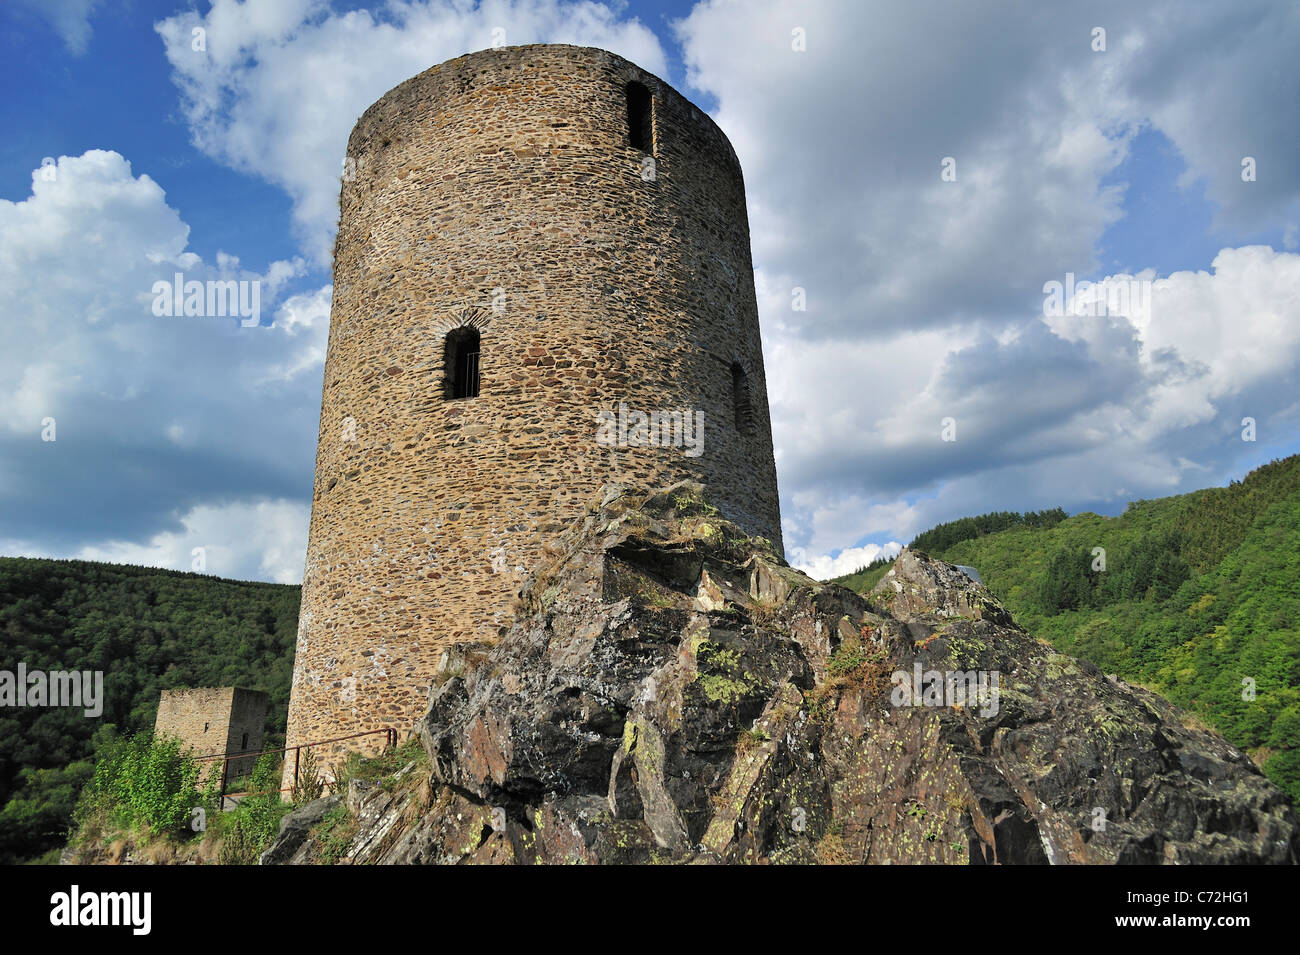 La rovina della medievale torre di avvistamento rotondo / Lochturm al villaggio di Esch-sur-Sûre / Esch-Sauer, Lussemburgo Foto Stock